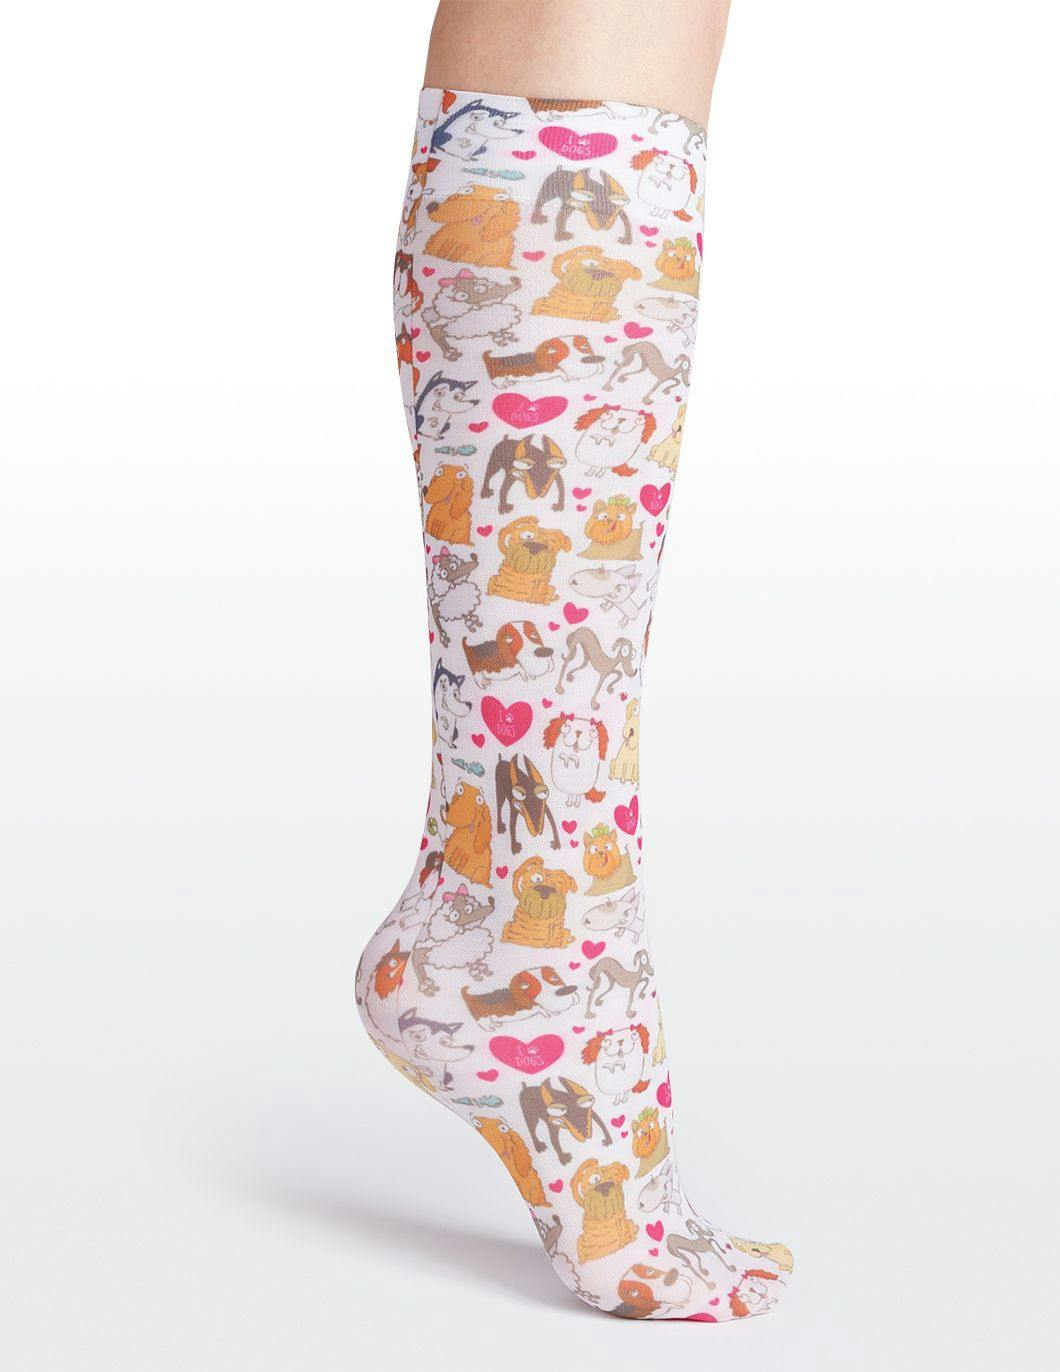 cutieful-compression-socks-8-15-mmhg-dog-pawty-print